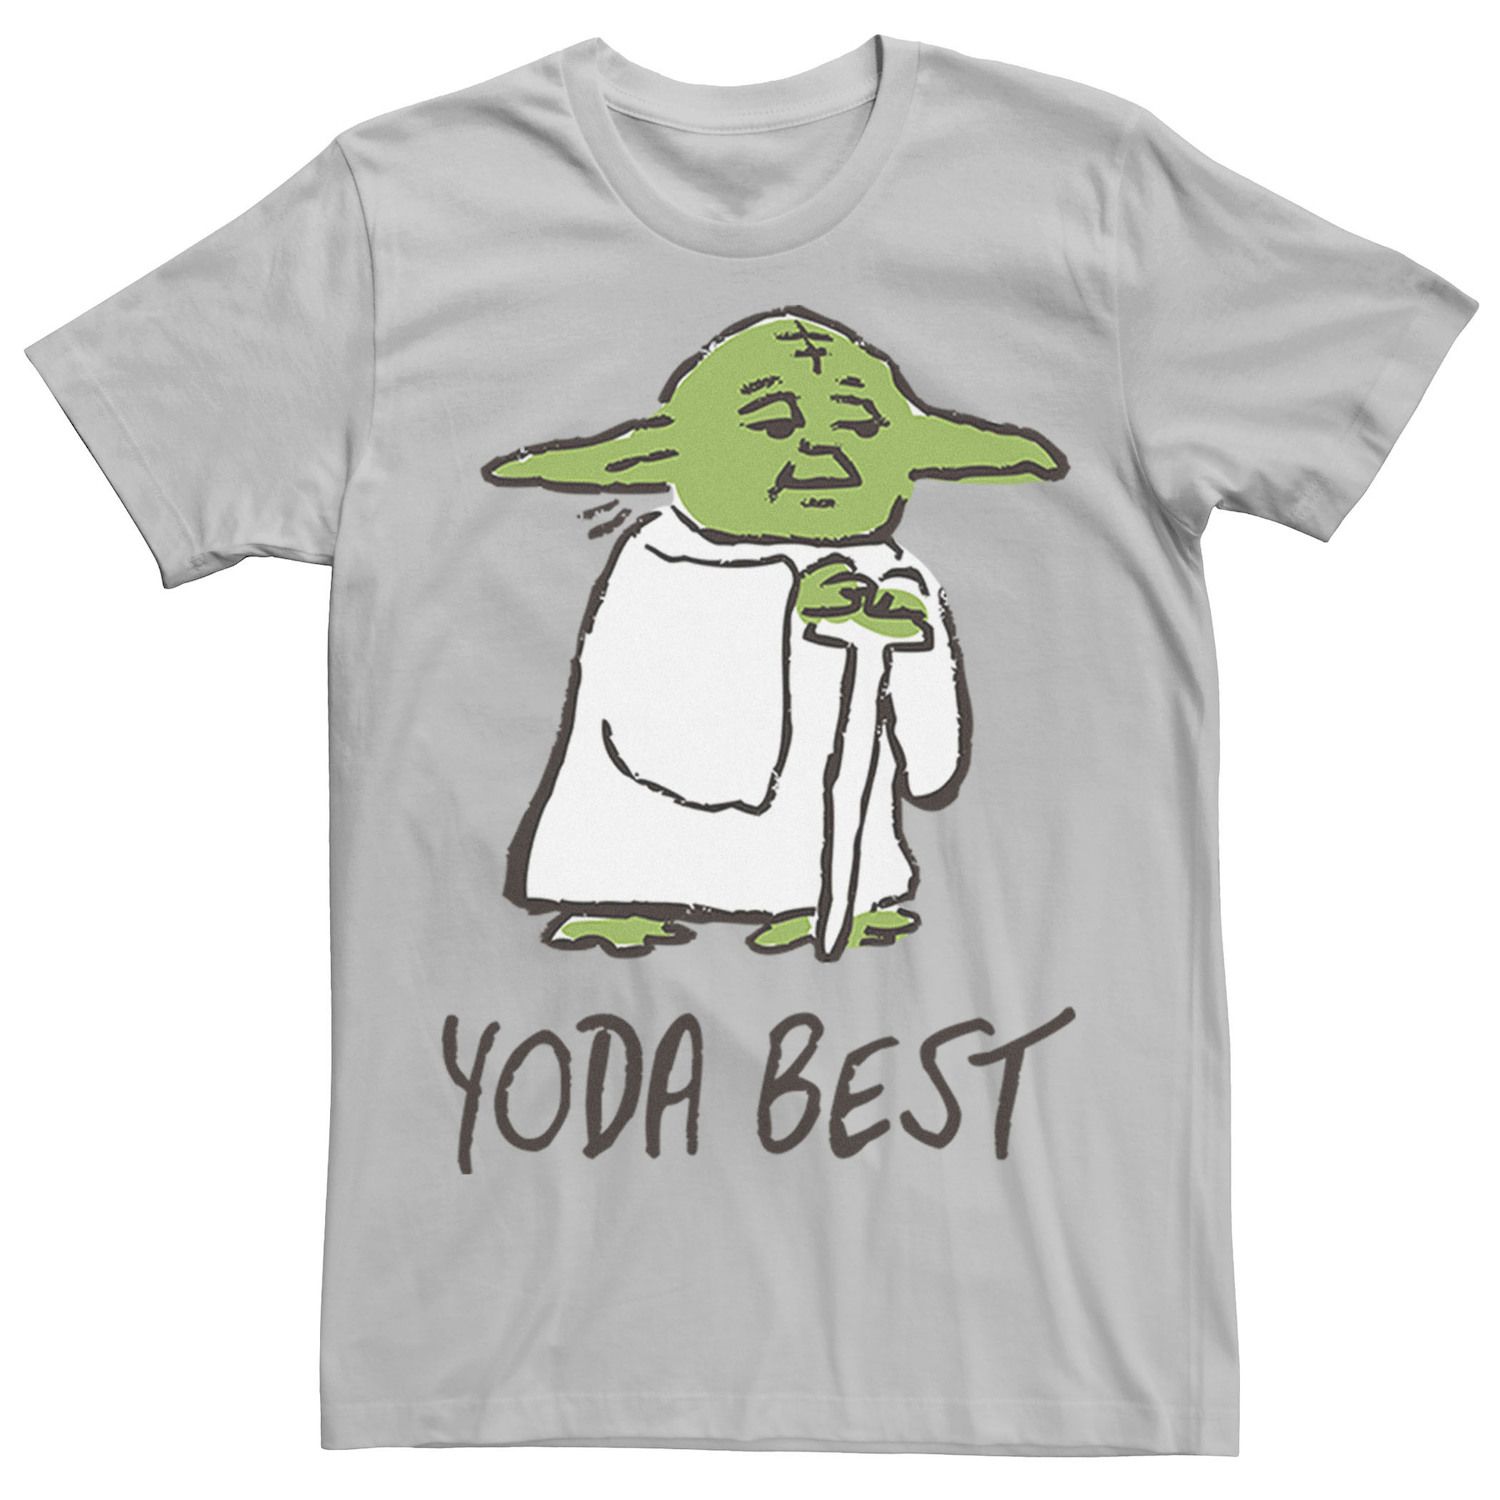 Мужская футболка с лучшим портретным эскизом «Звездные войны Йода» Star Wars, серебристый